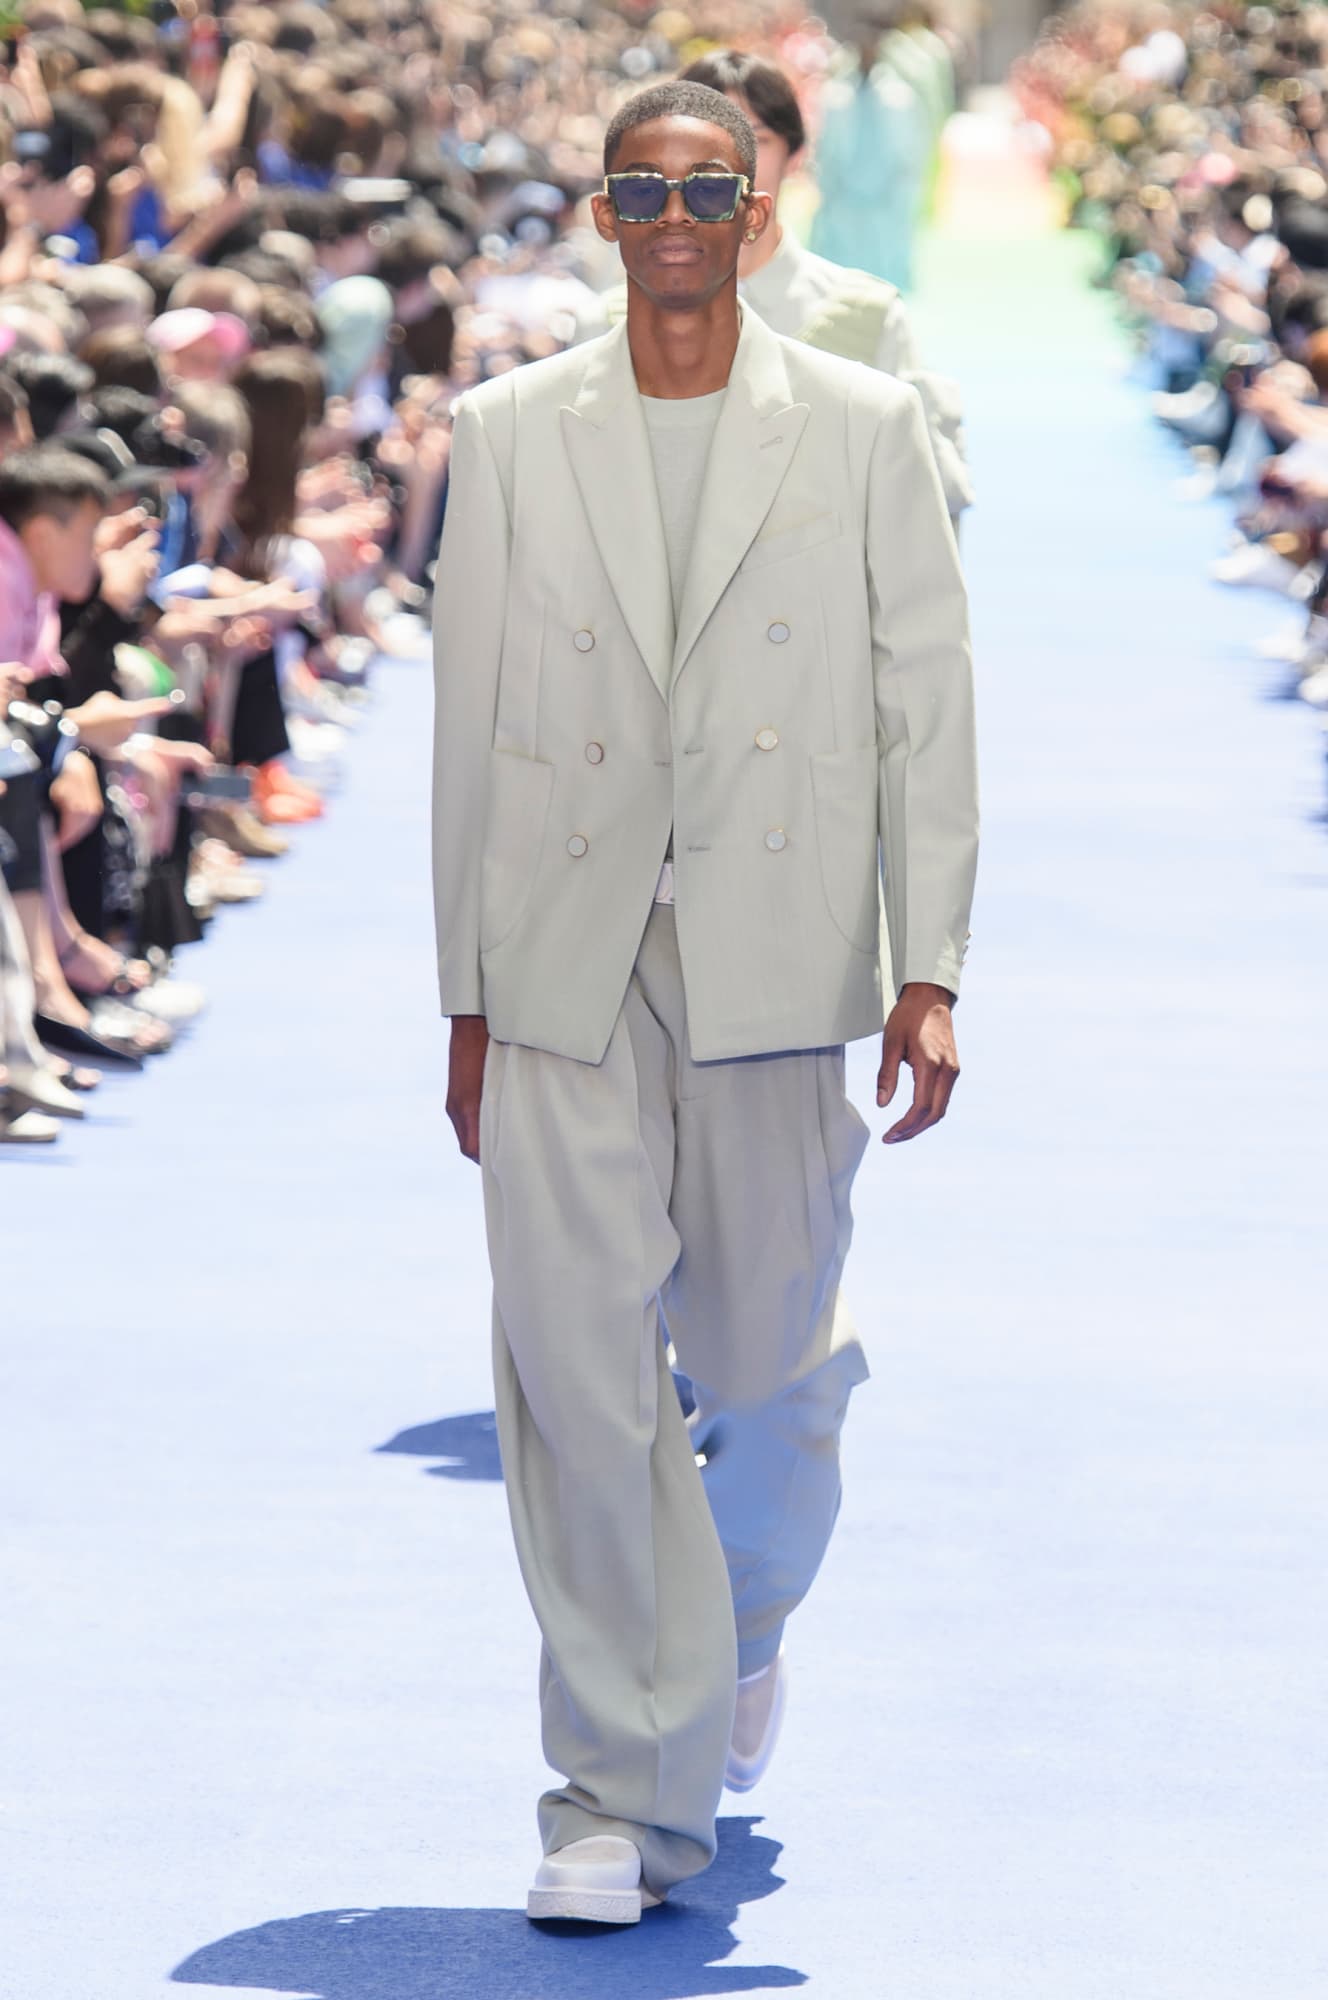 “Virgil Abloh makes debut for Louis Vuitton”